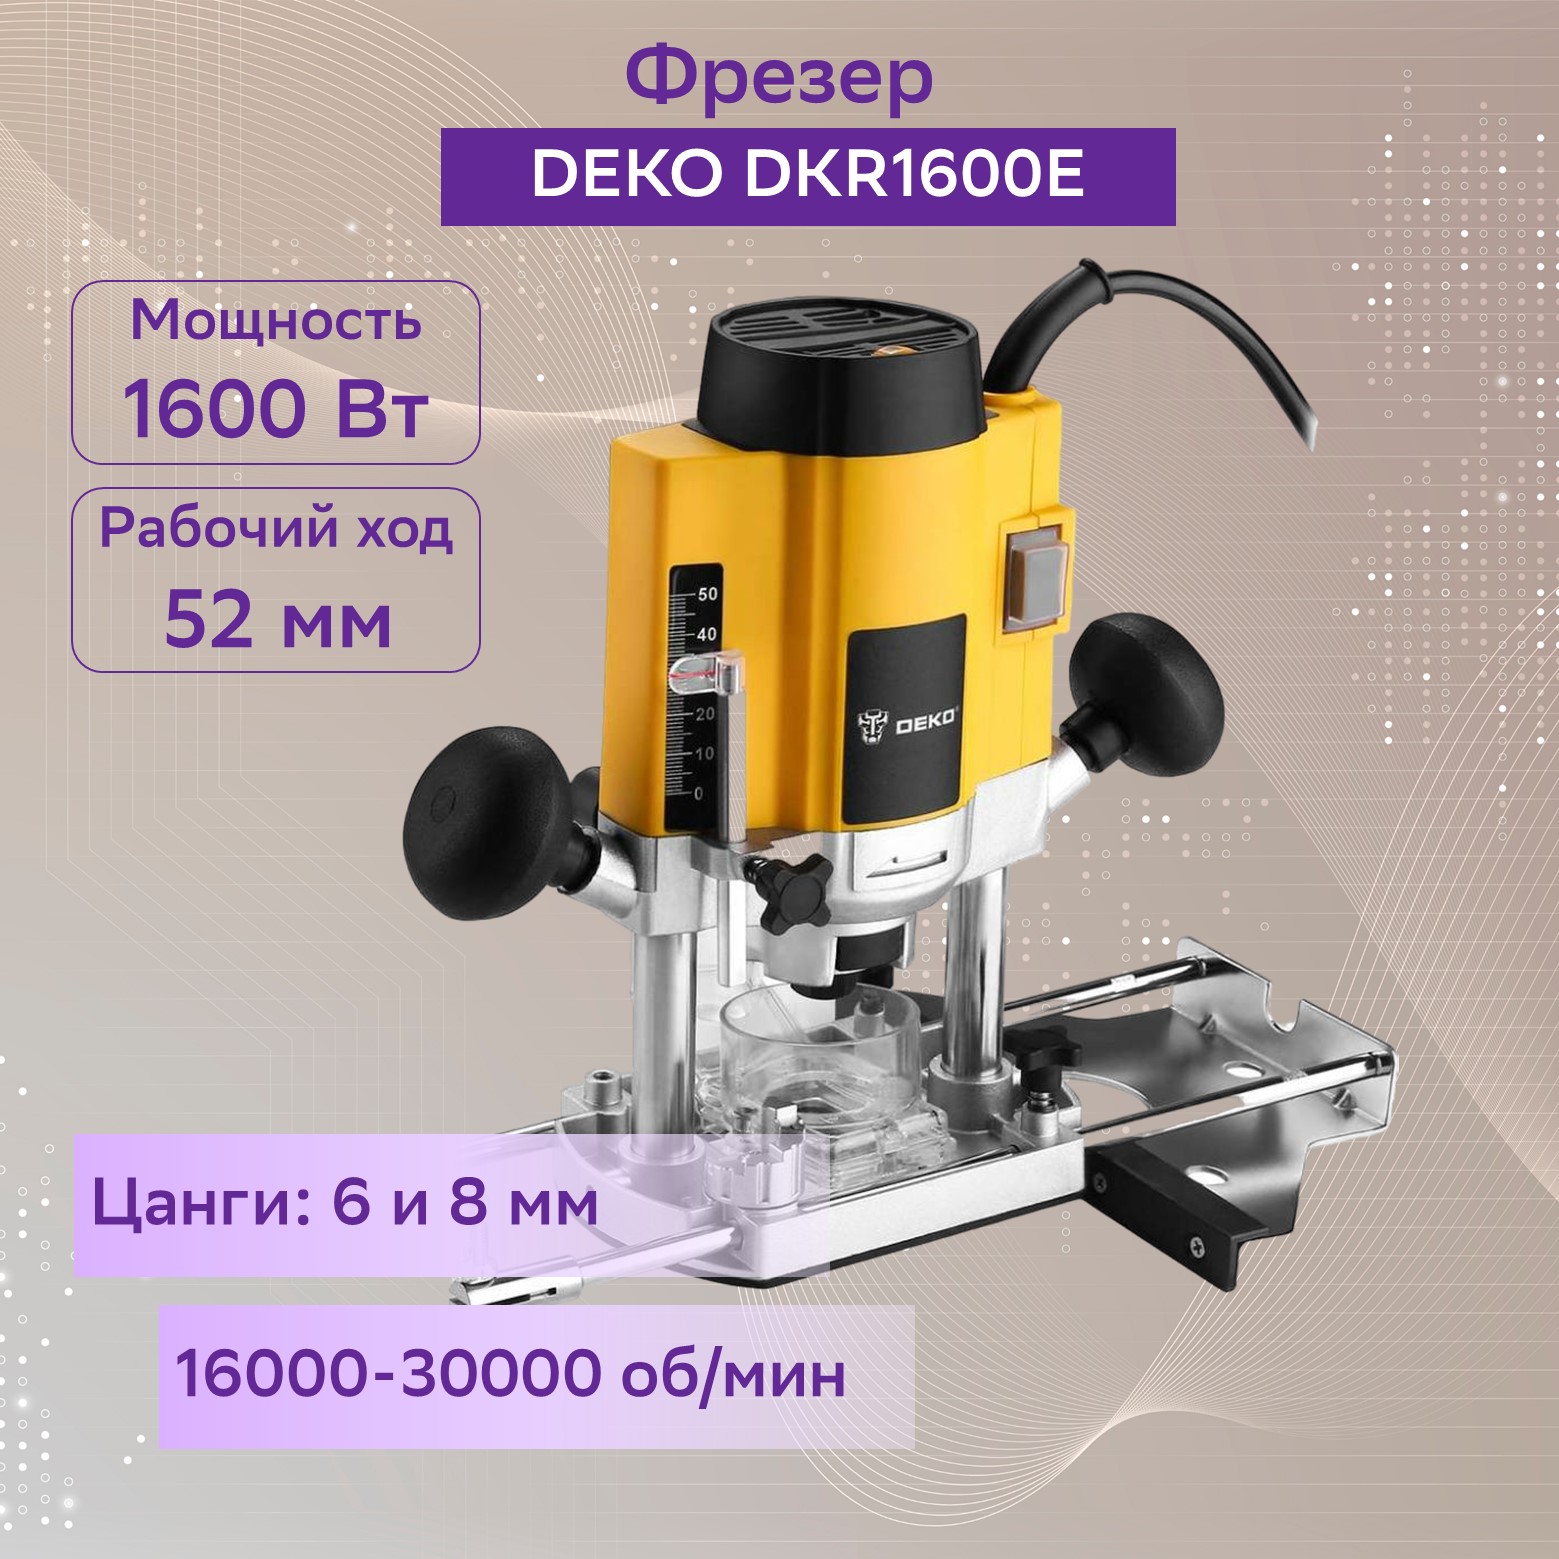  DEKO DKR1600E (063-4193) 1600 Вт, 16000-30000 ходов/мин  в .